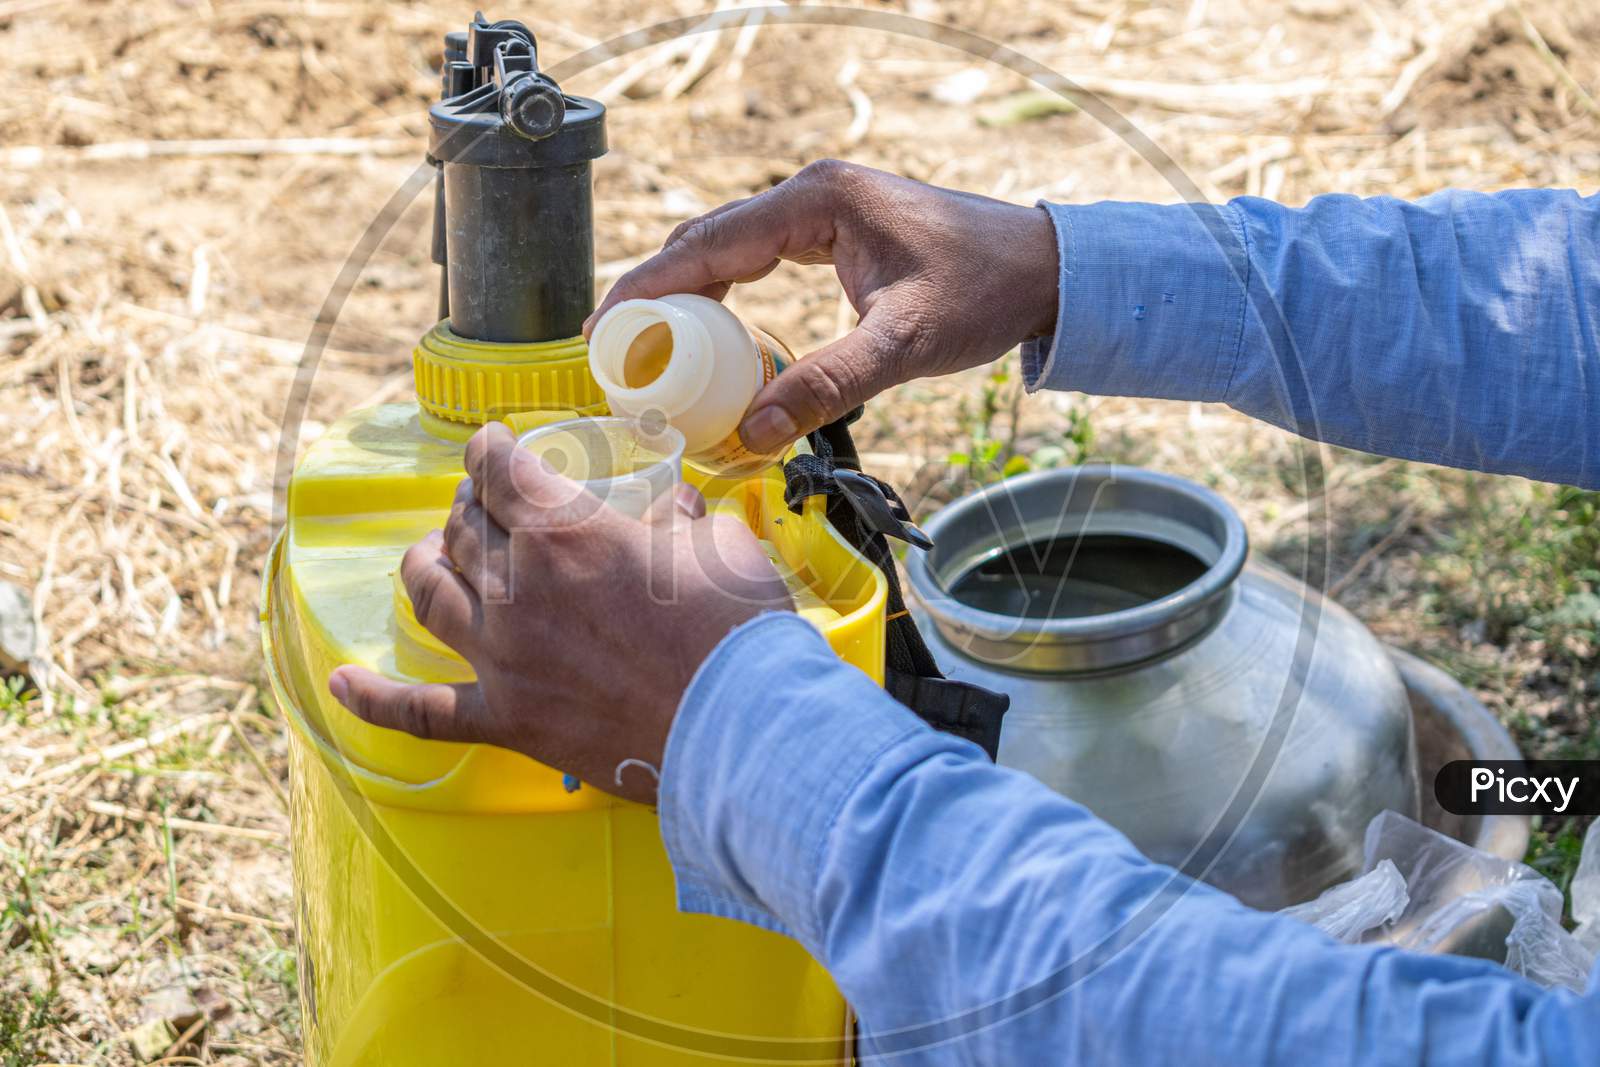 A farmer putting pesticides into pesticide sprayer